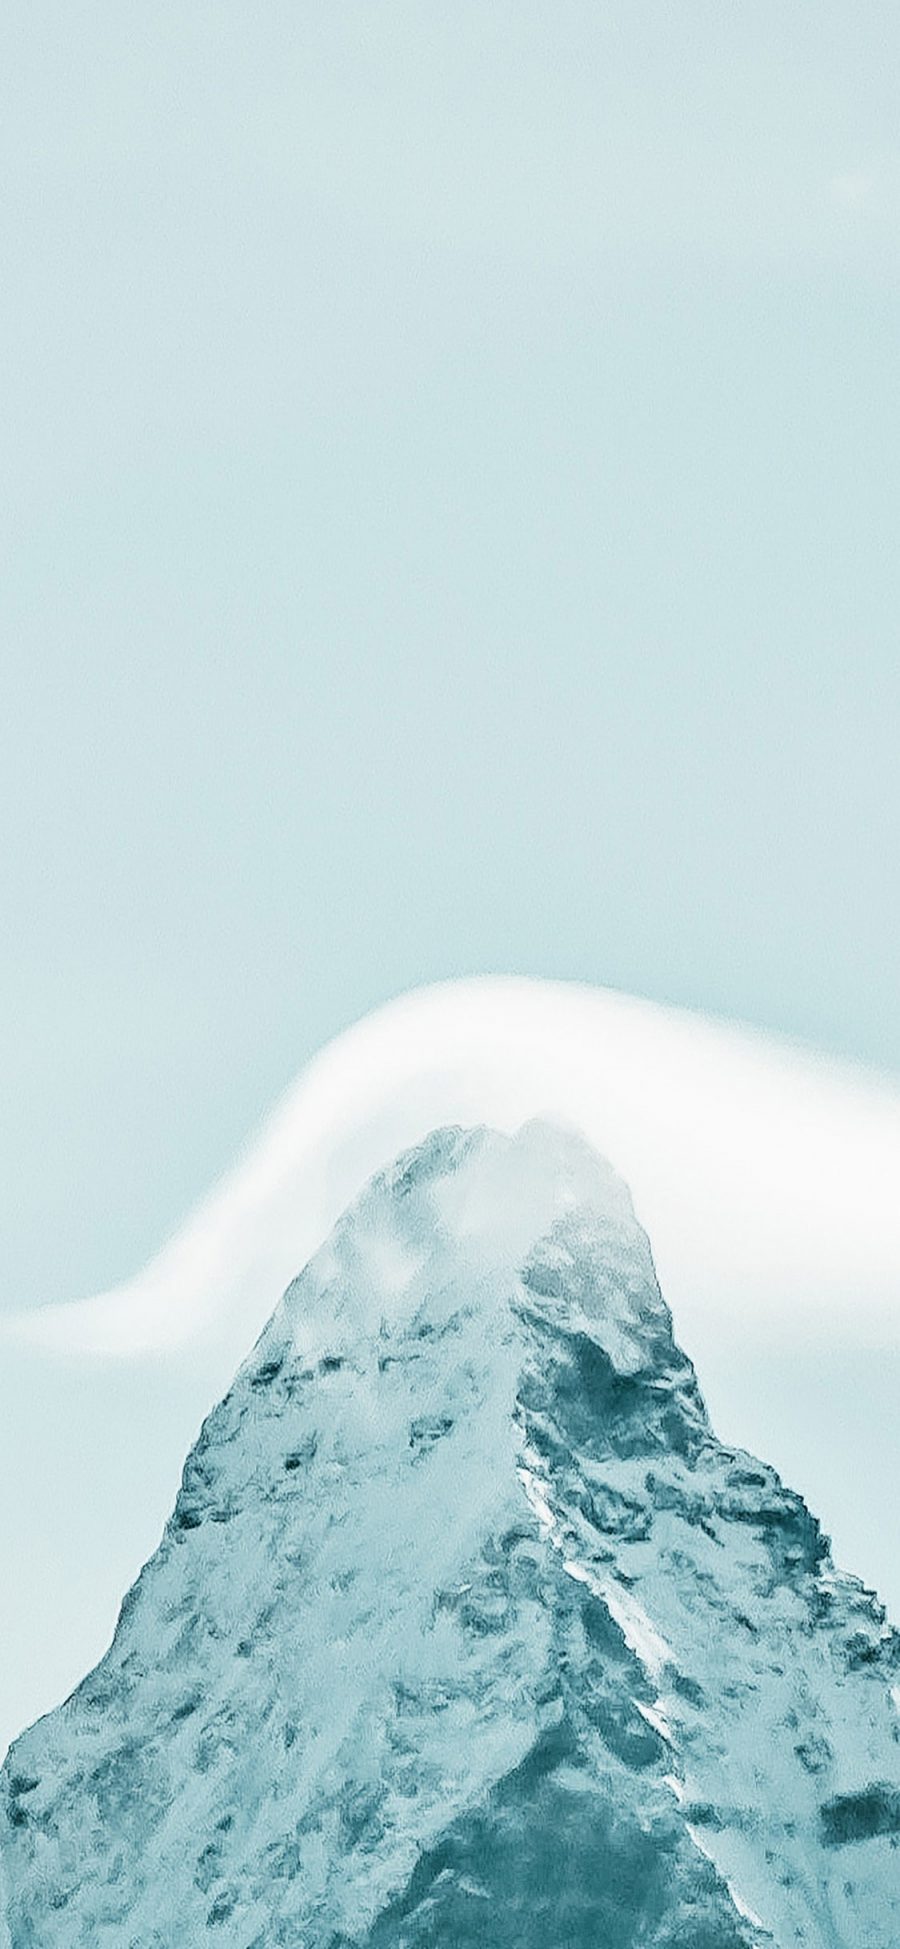 [2436×1125]郊外 山峰 云朵 壮观 苹果手机壁纸图片